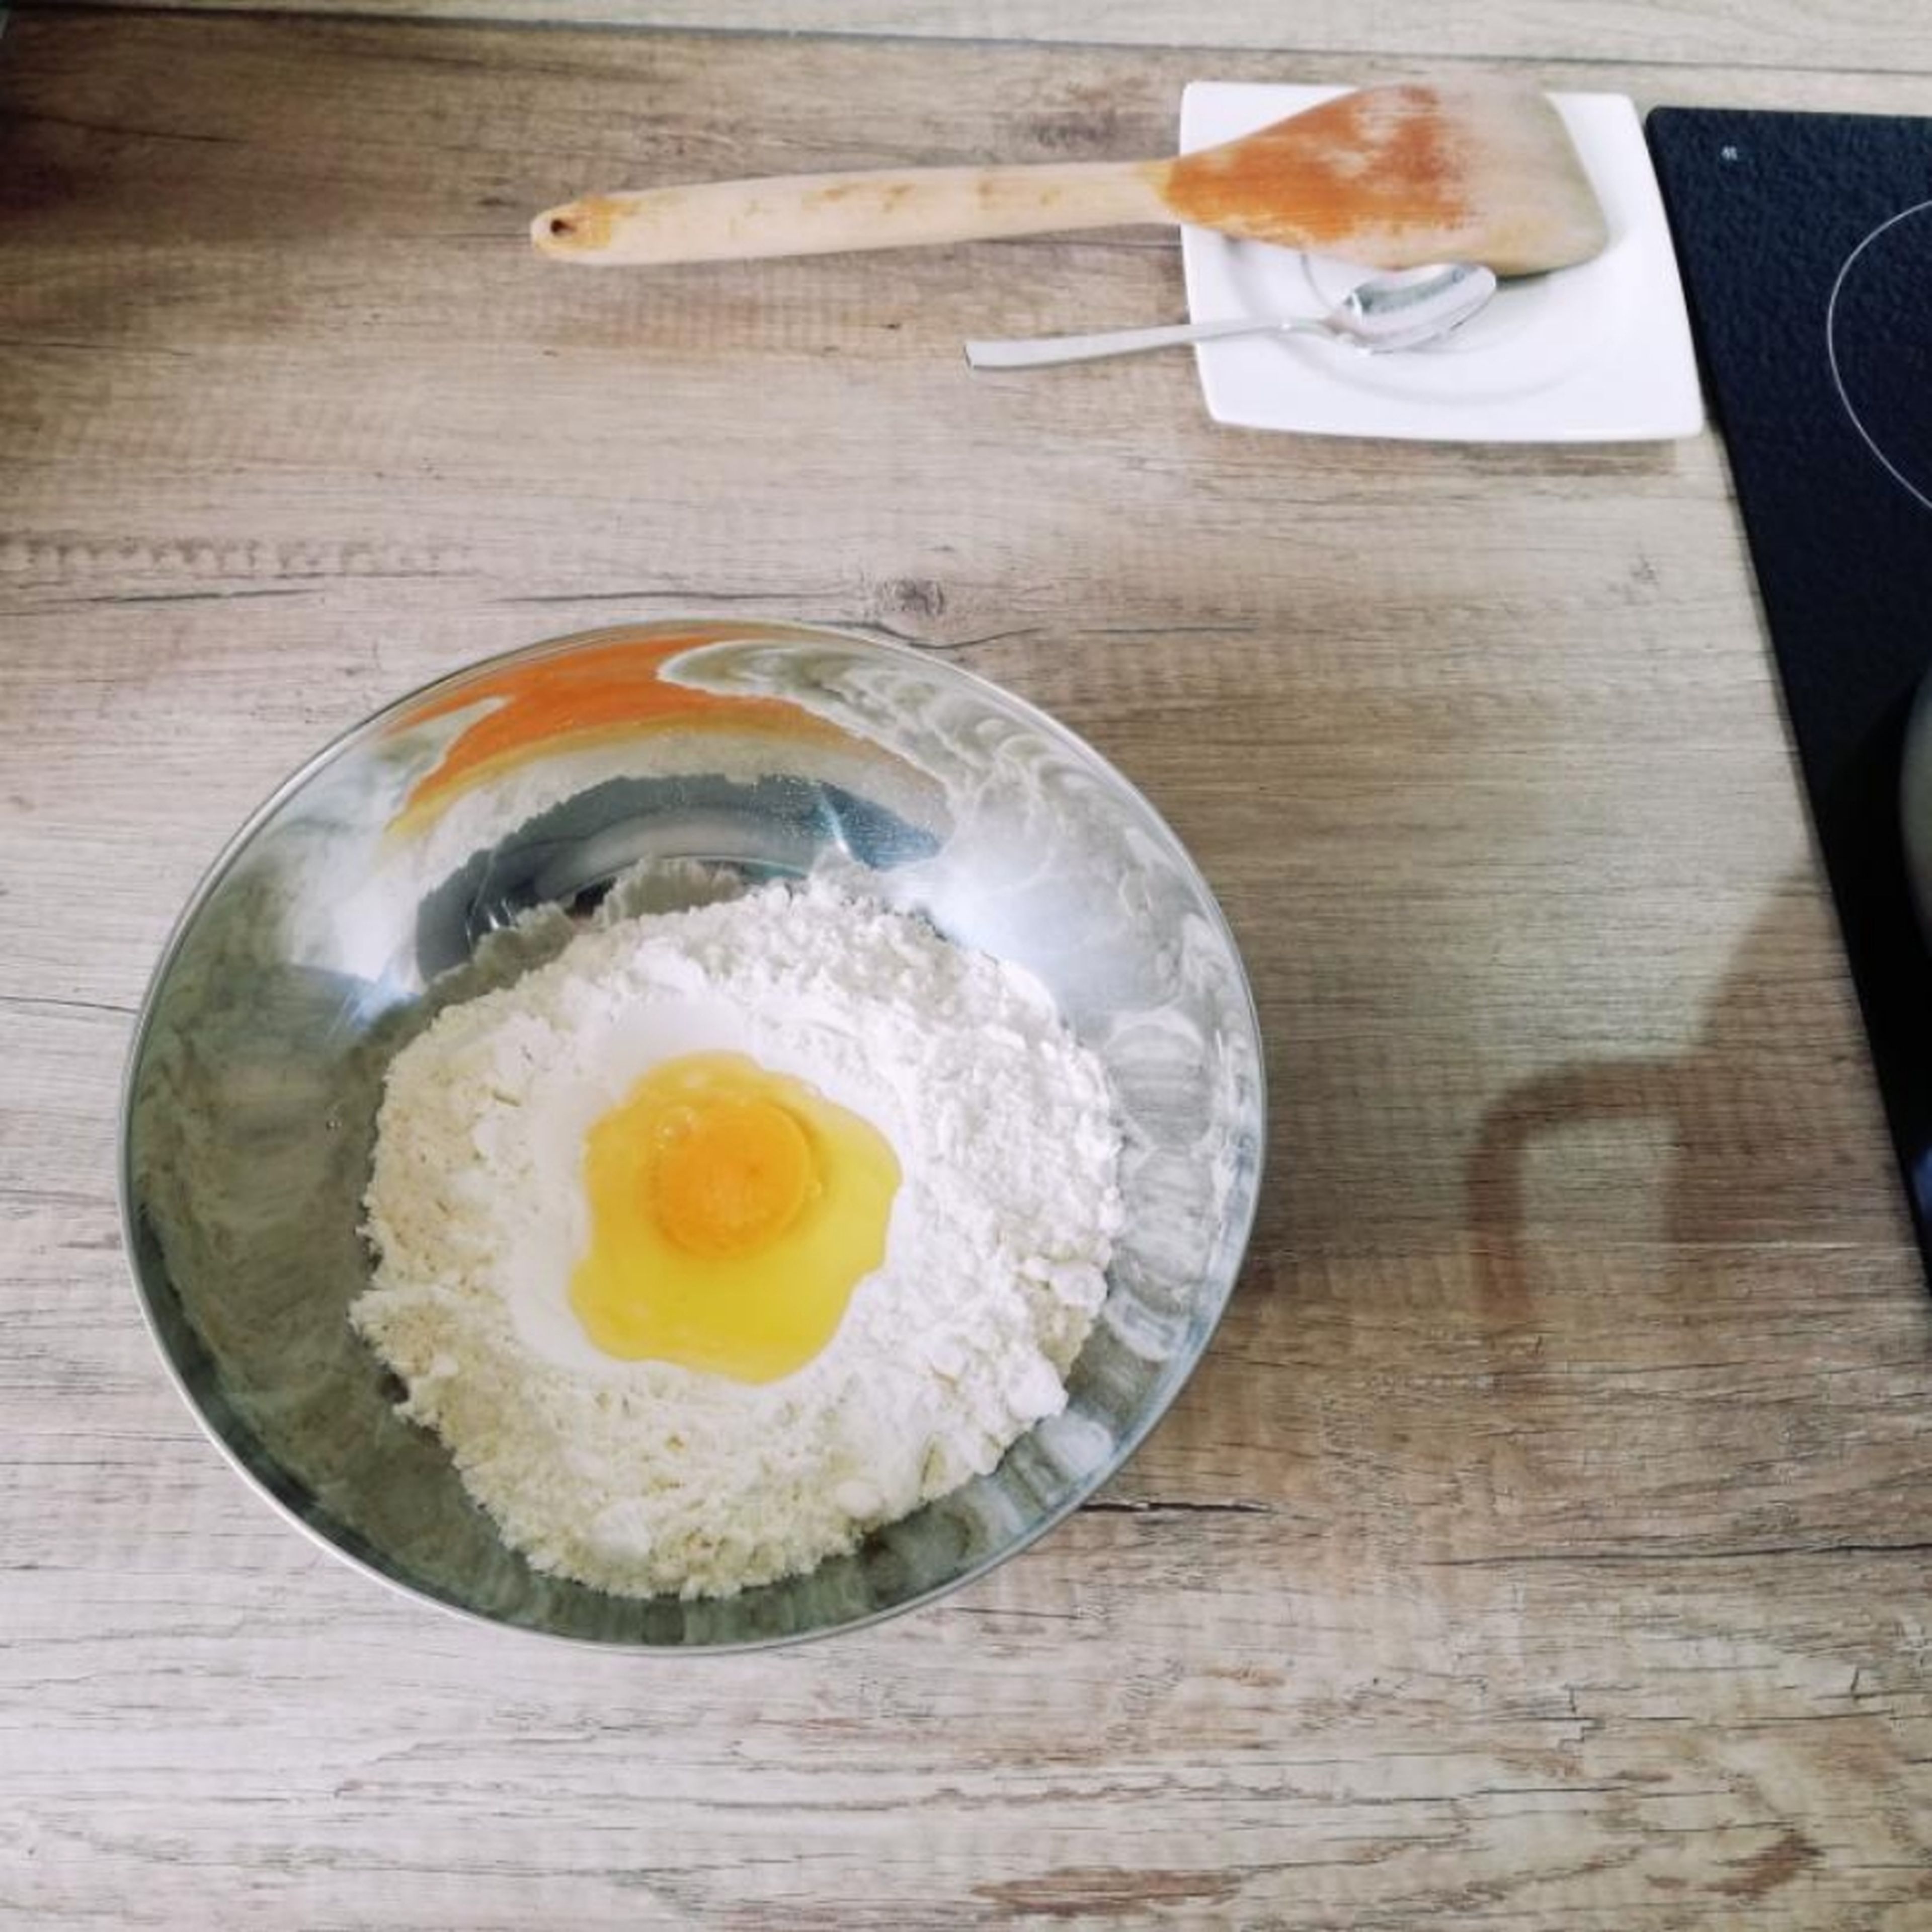 Mehl in eine Schüssel geben und in der Mitte eine Kule bilden, in welches das Ei gegeben wird. Mit einer Prise Salz würzen und vermengen. Etwas Wasser beifügen und zu einem festen Teig kneten.